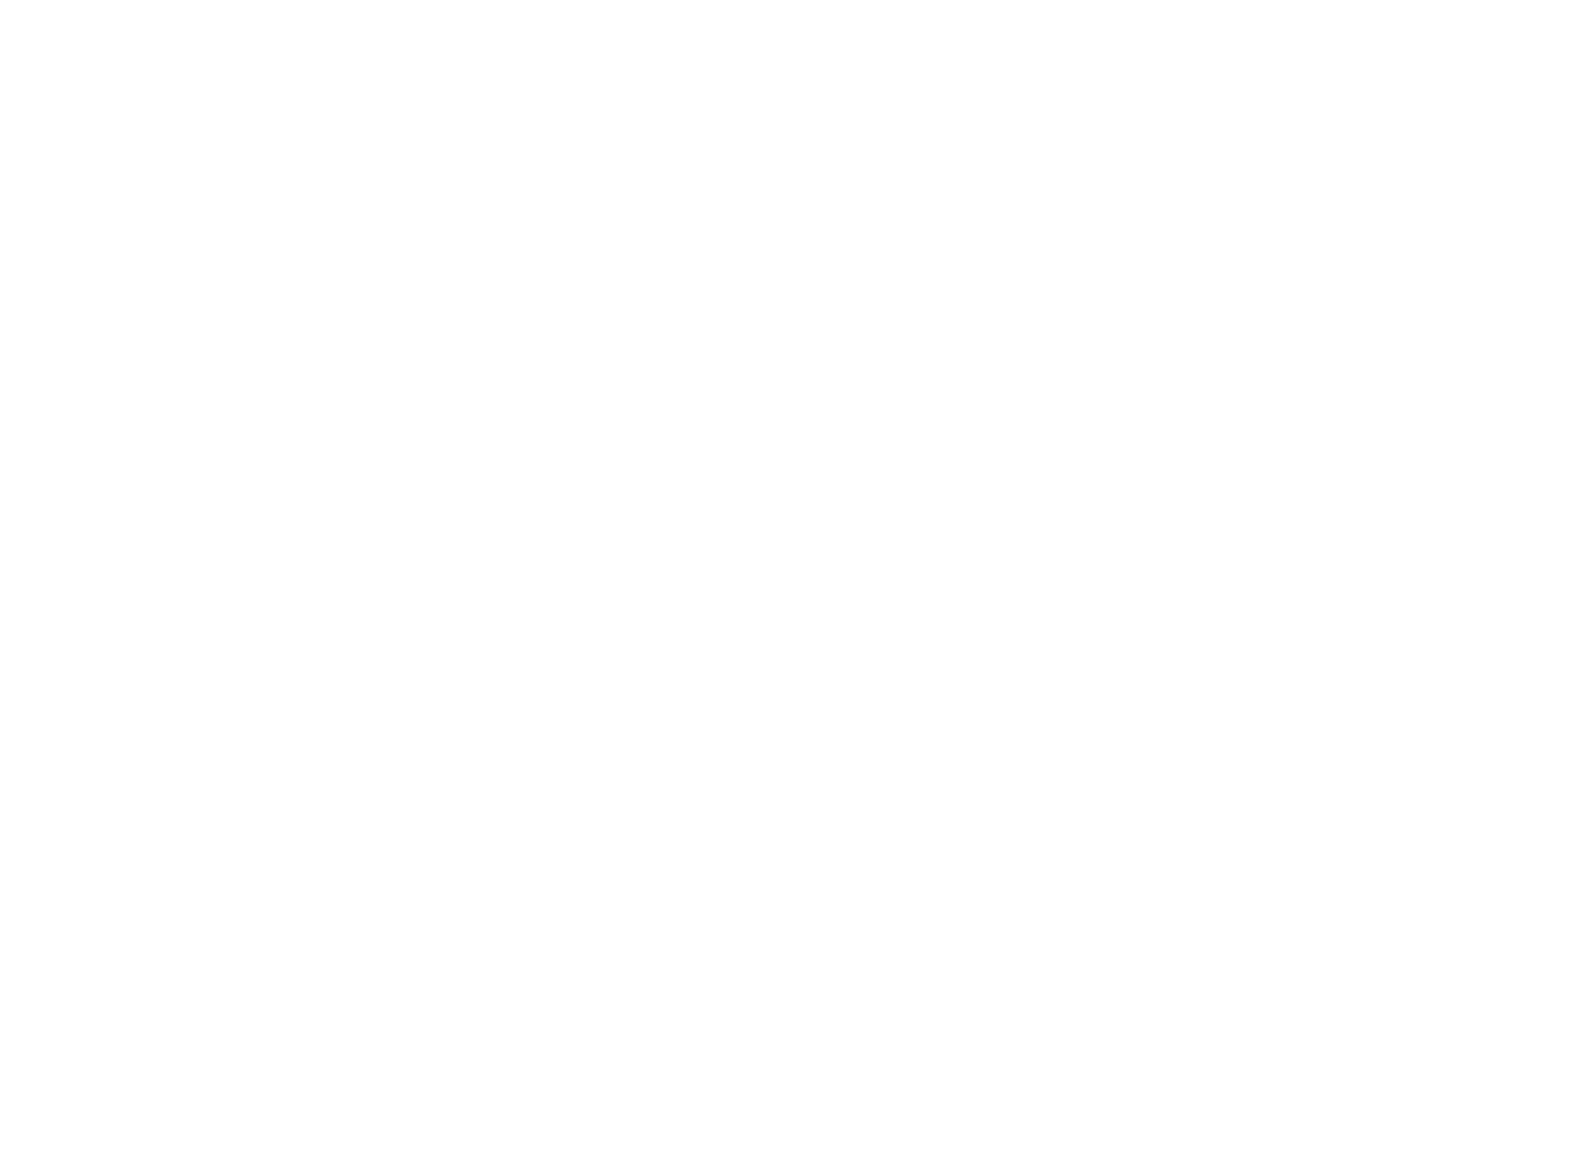 Klabin logo grand pour les fonds sombres (PNG transparent)